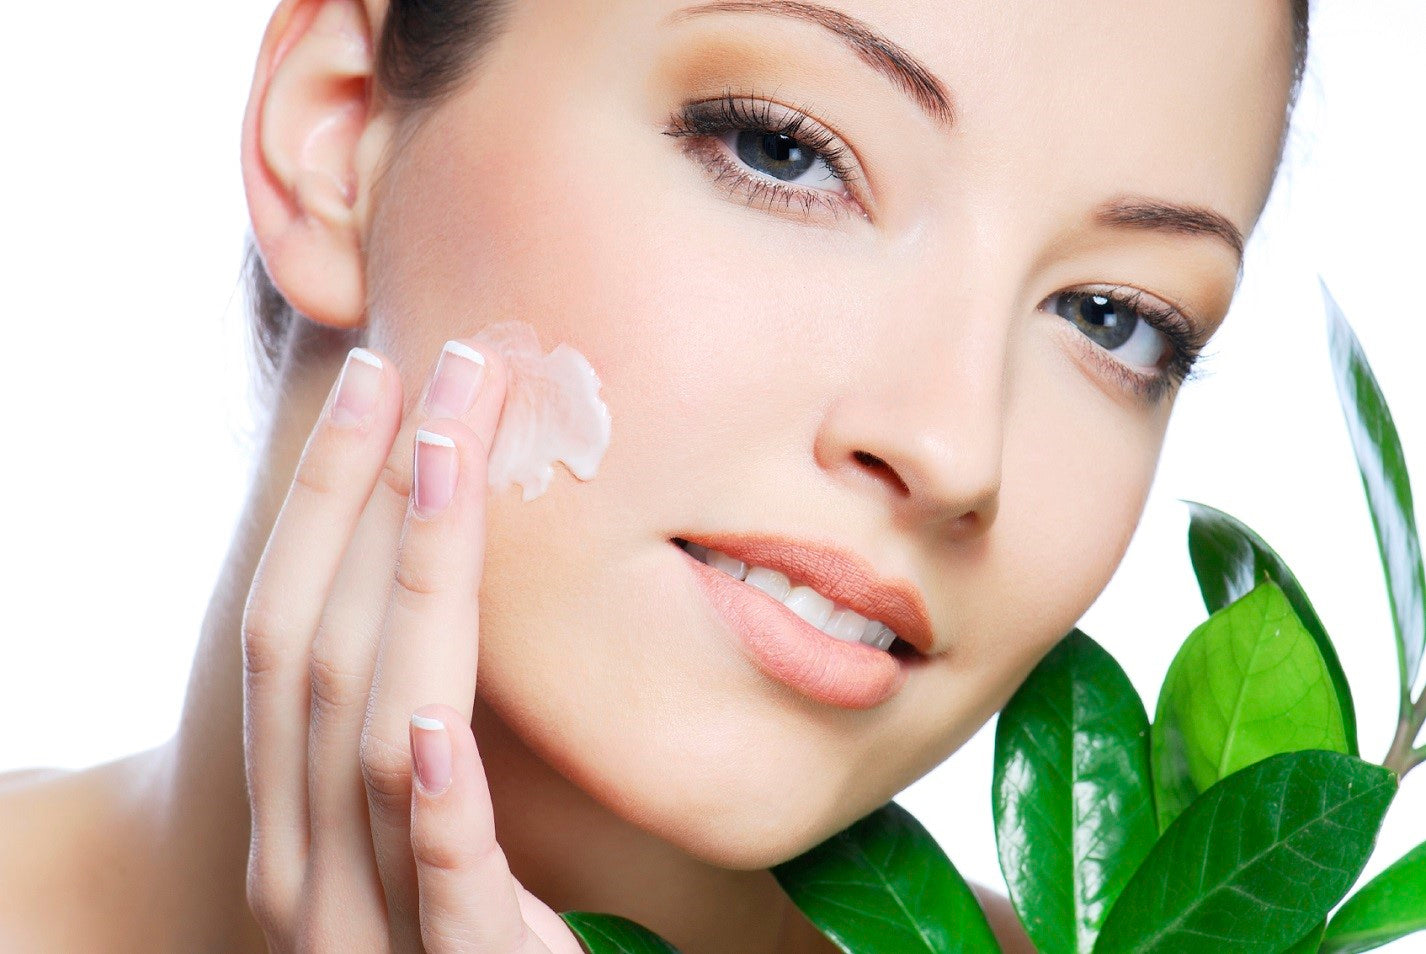 Acne skin care routine